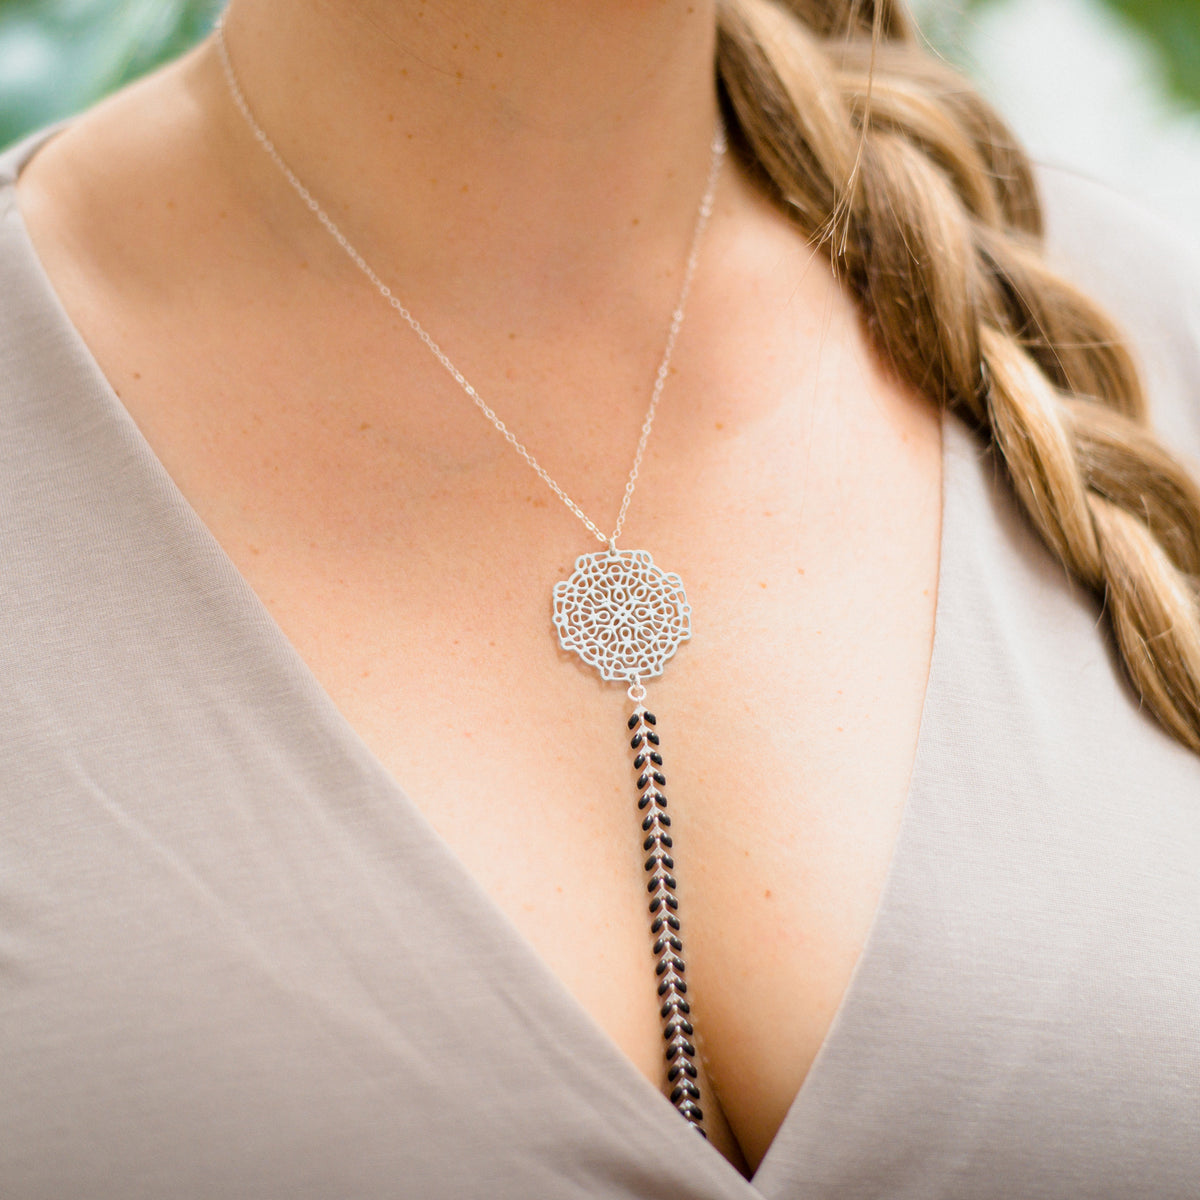 Rise Necklace ✦ Chakra Jewelry